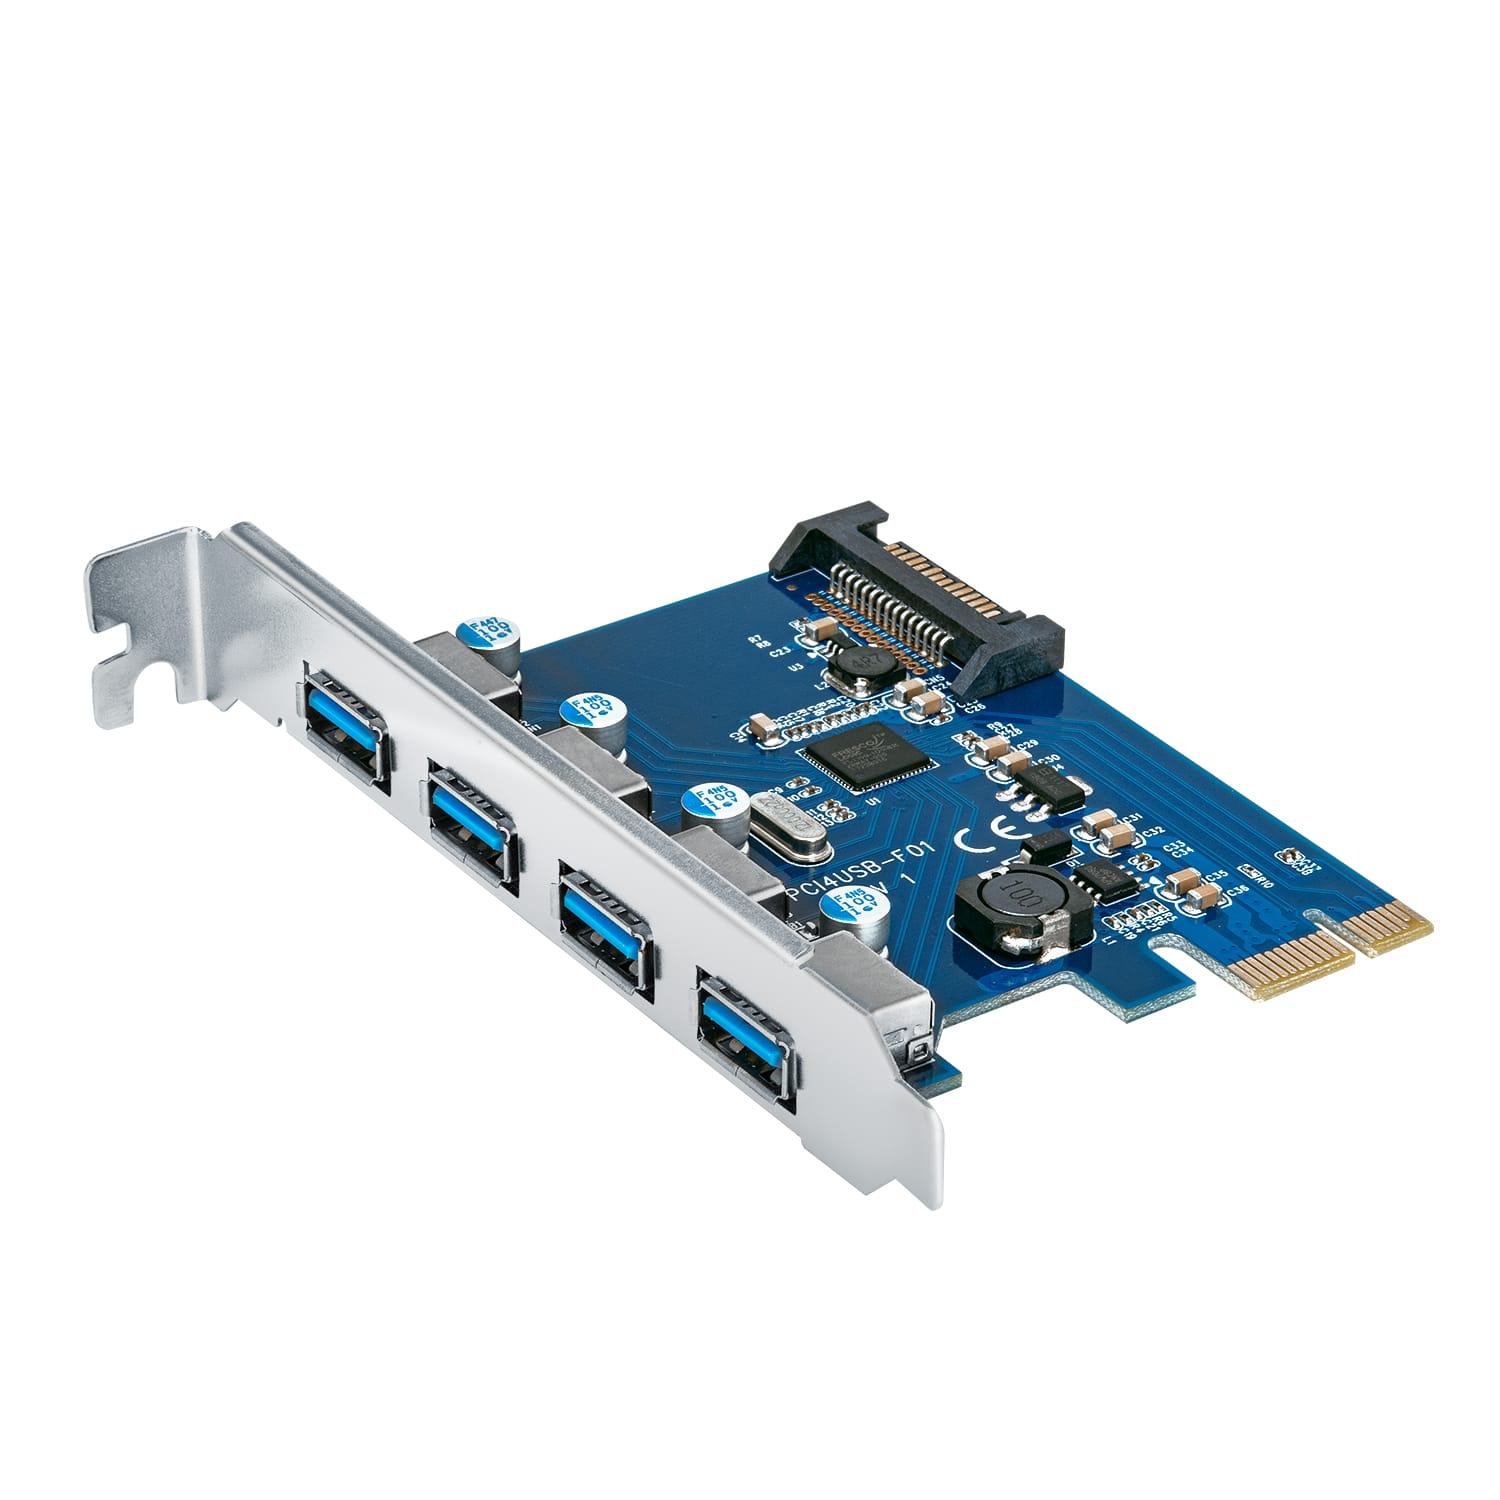 センチュリー、4ポートUSB PCIeカードを発売